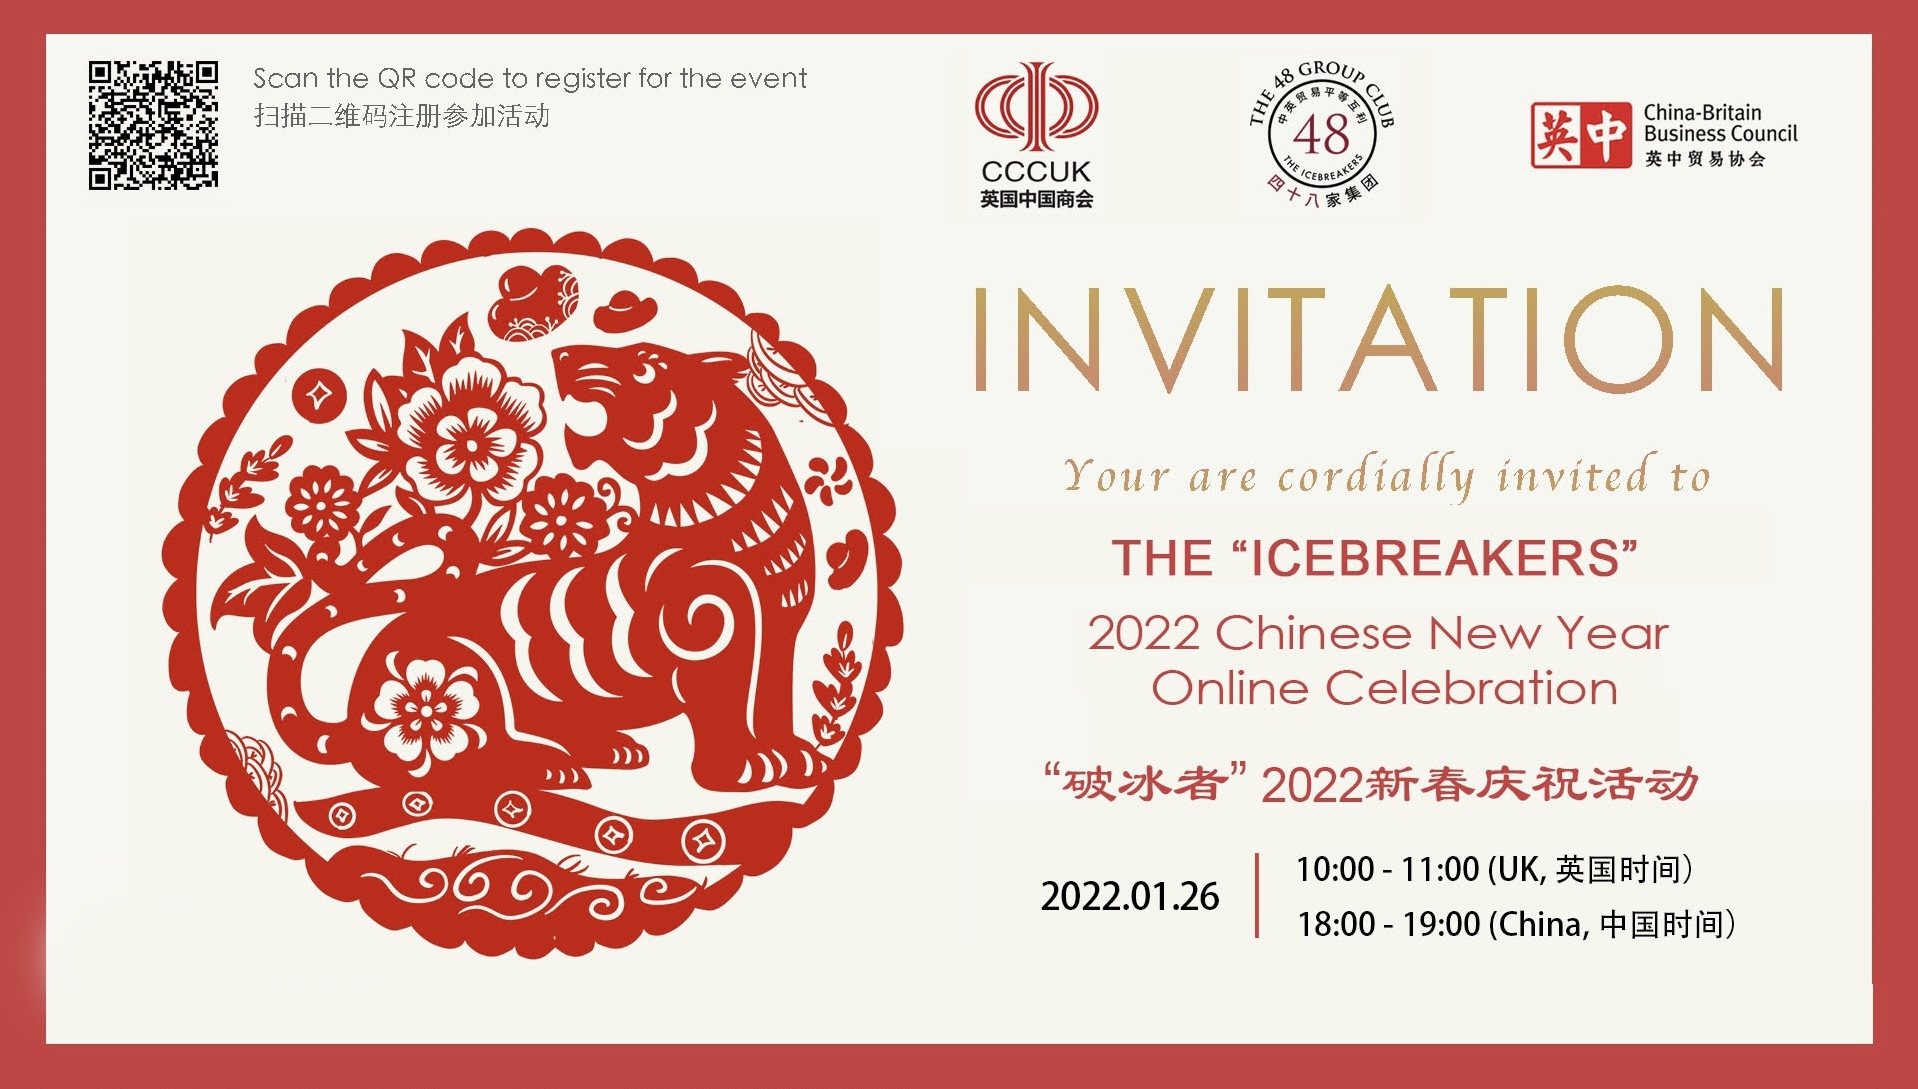 icebreakers 2022 chinese new year invite